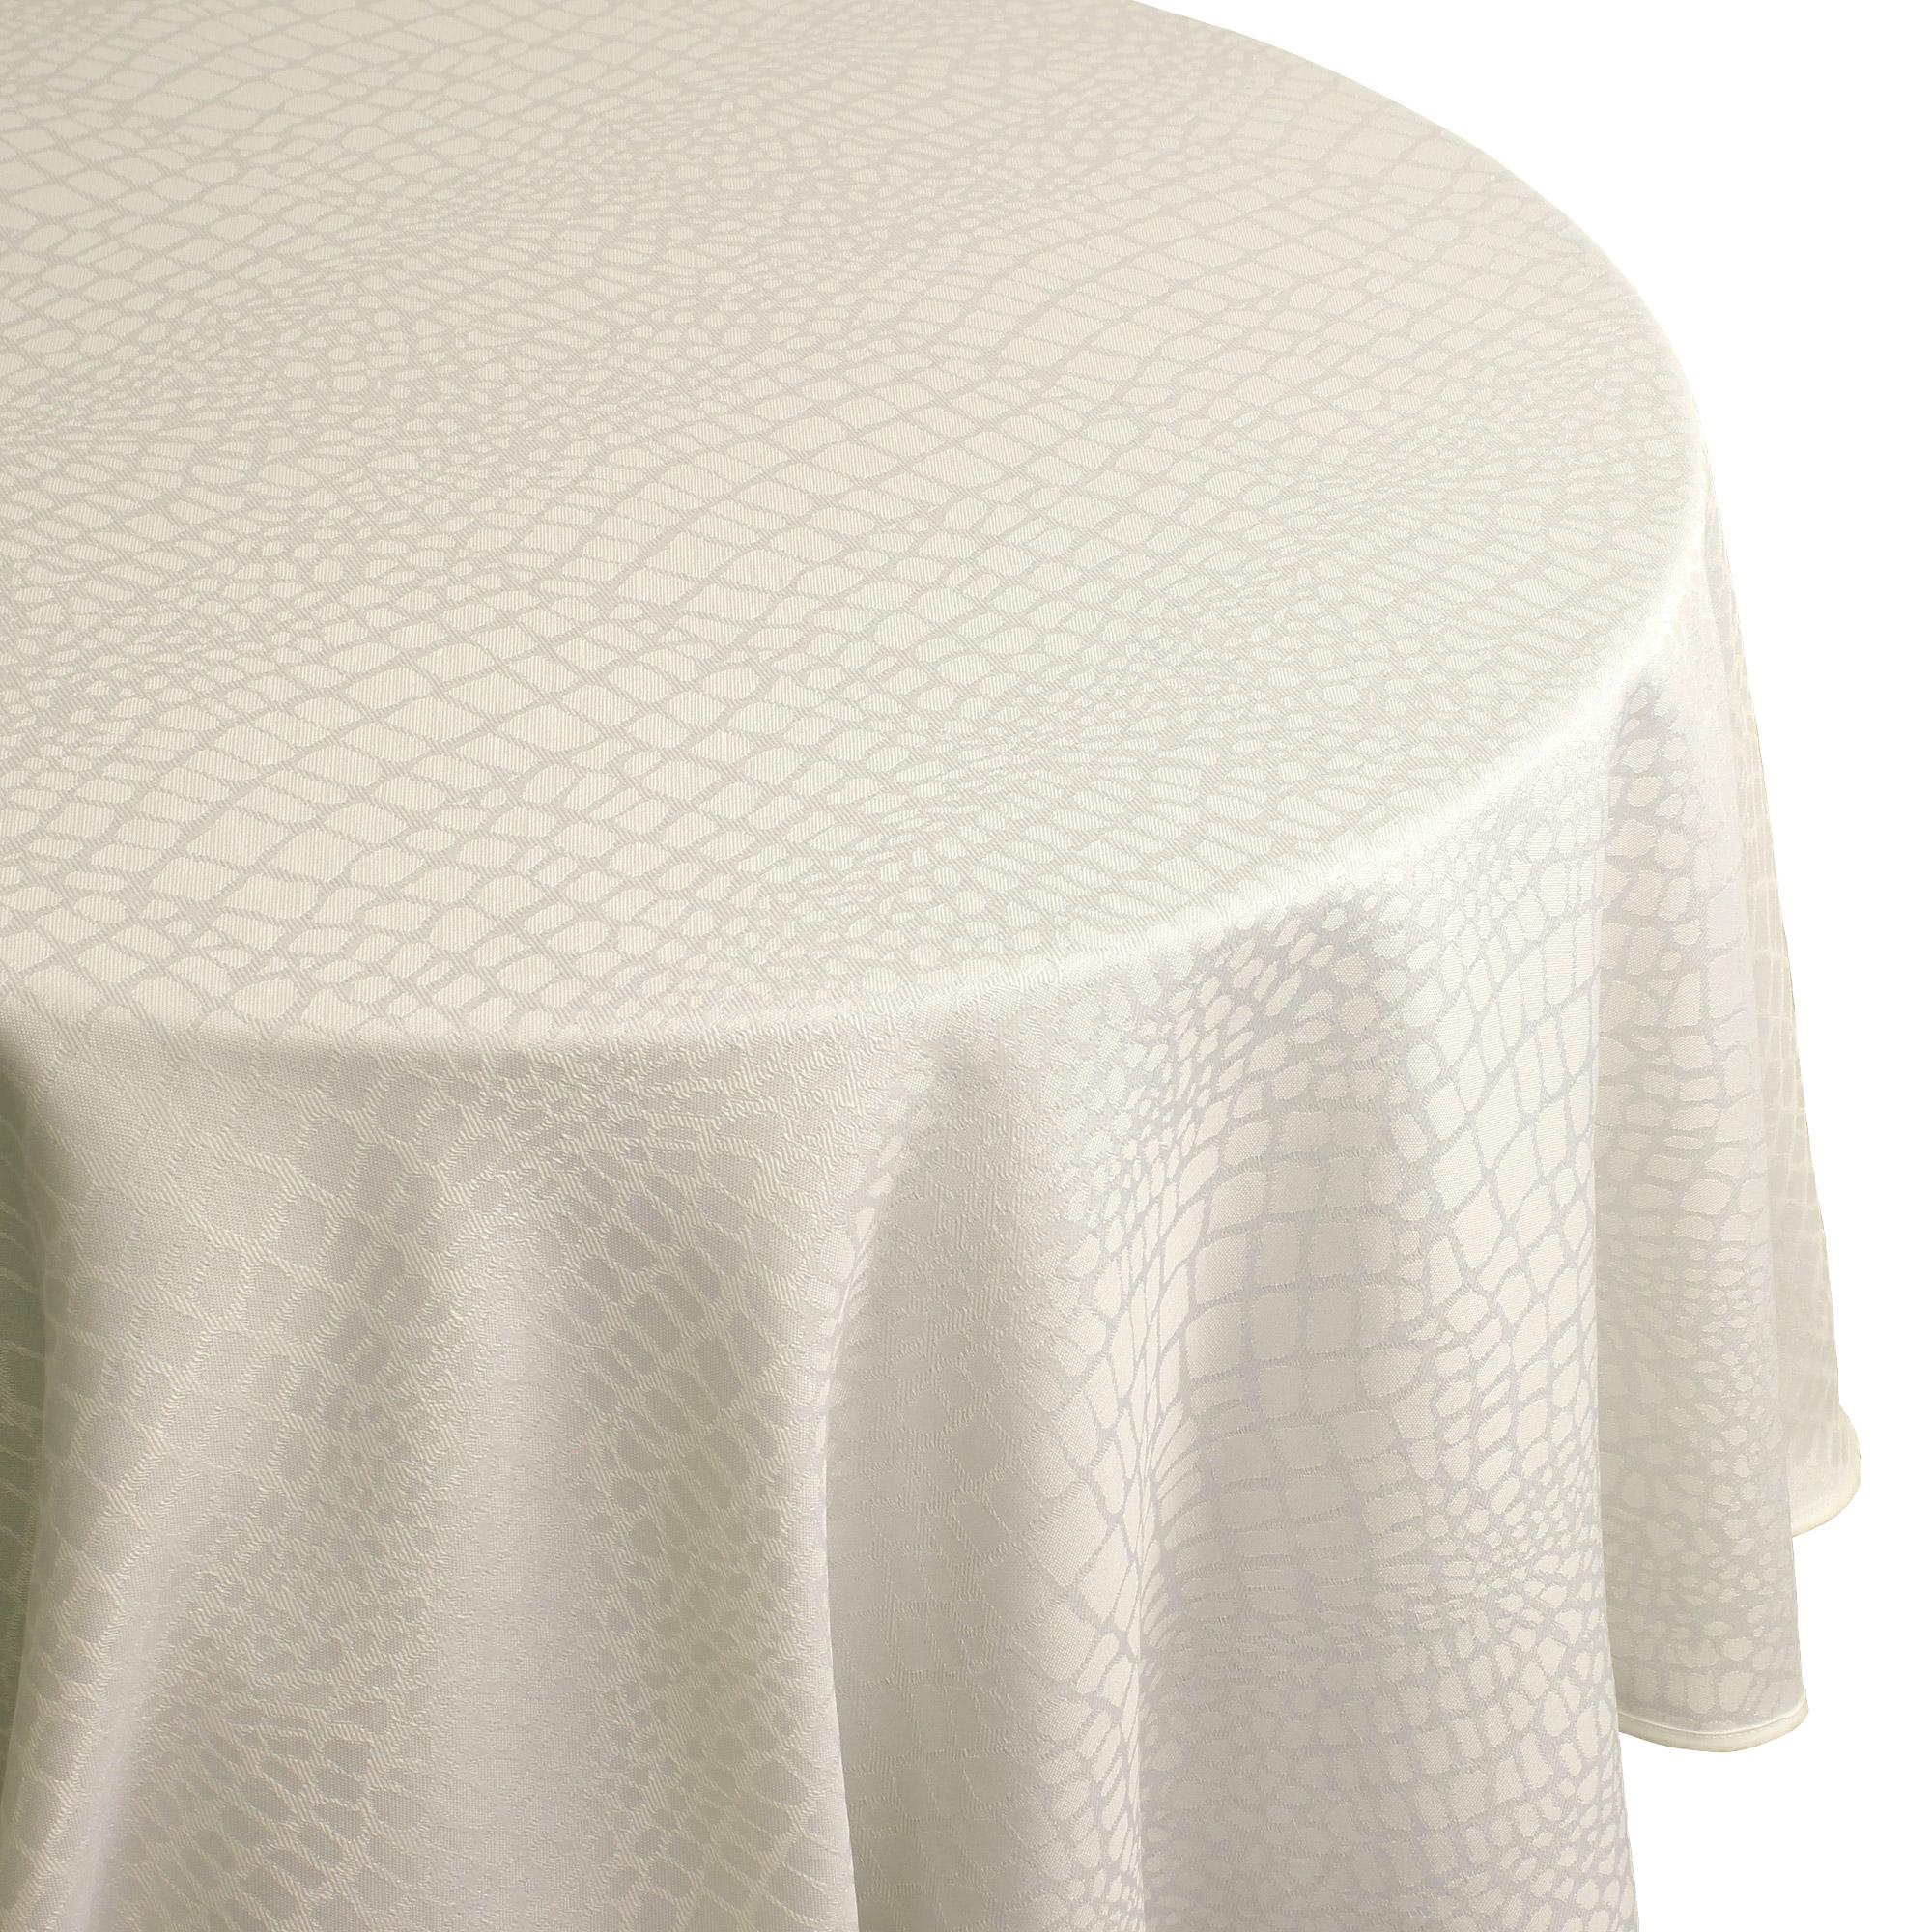 Nappe Ovale 180x240 Cm Jacquard 100% Polyester Brunch Blanc